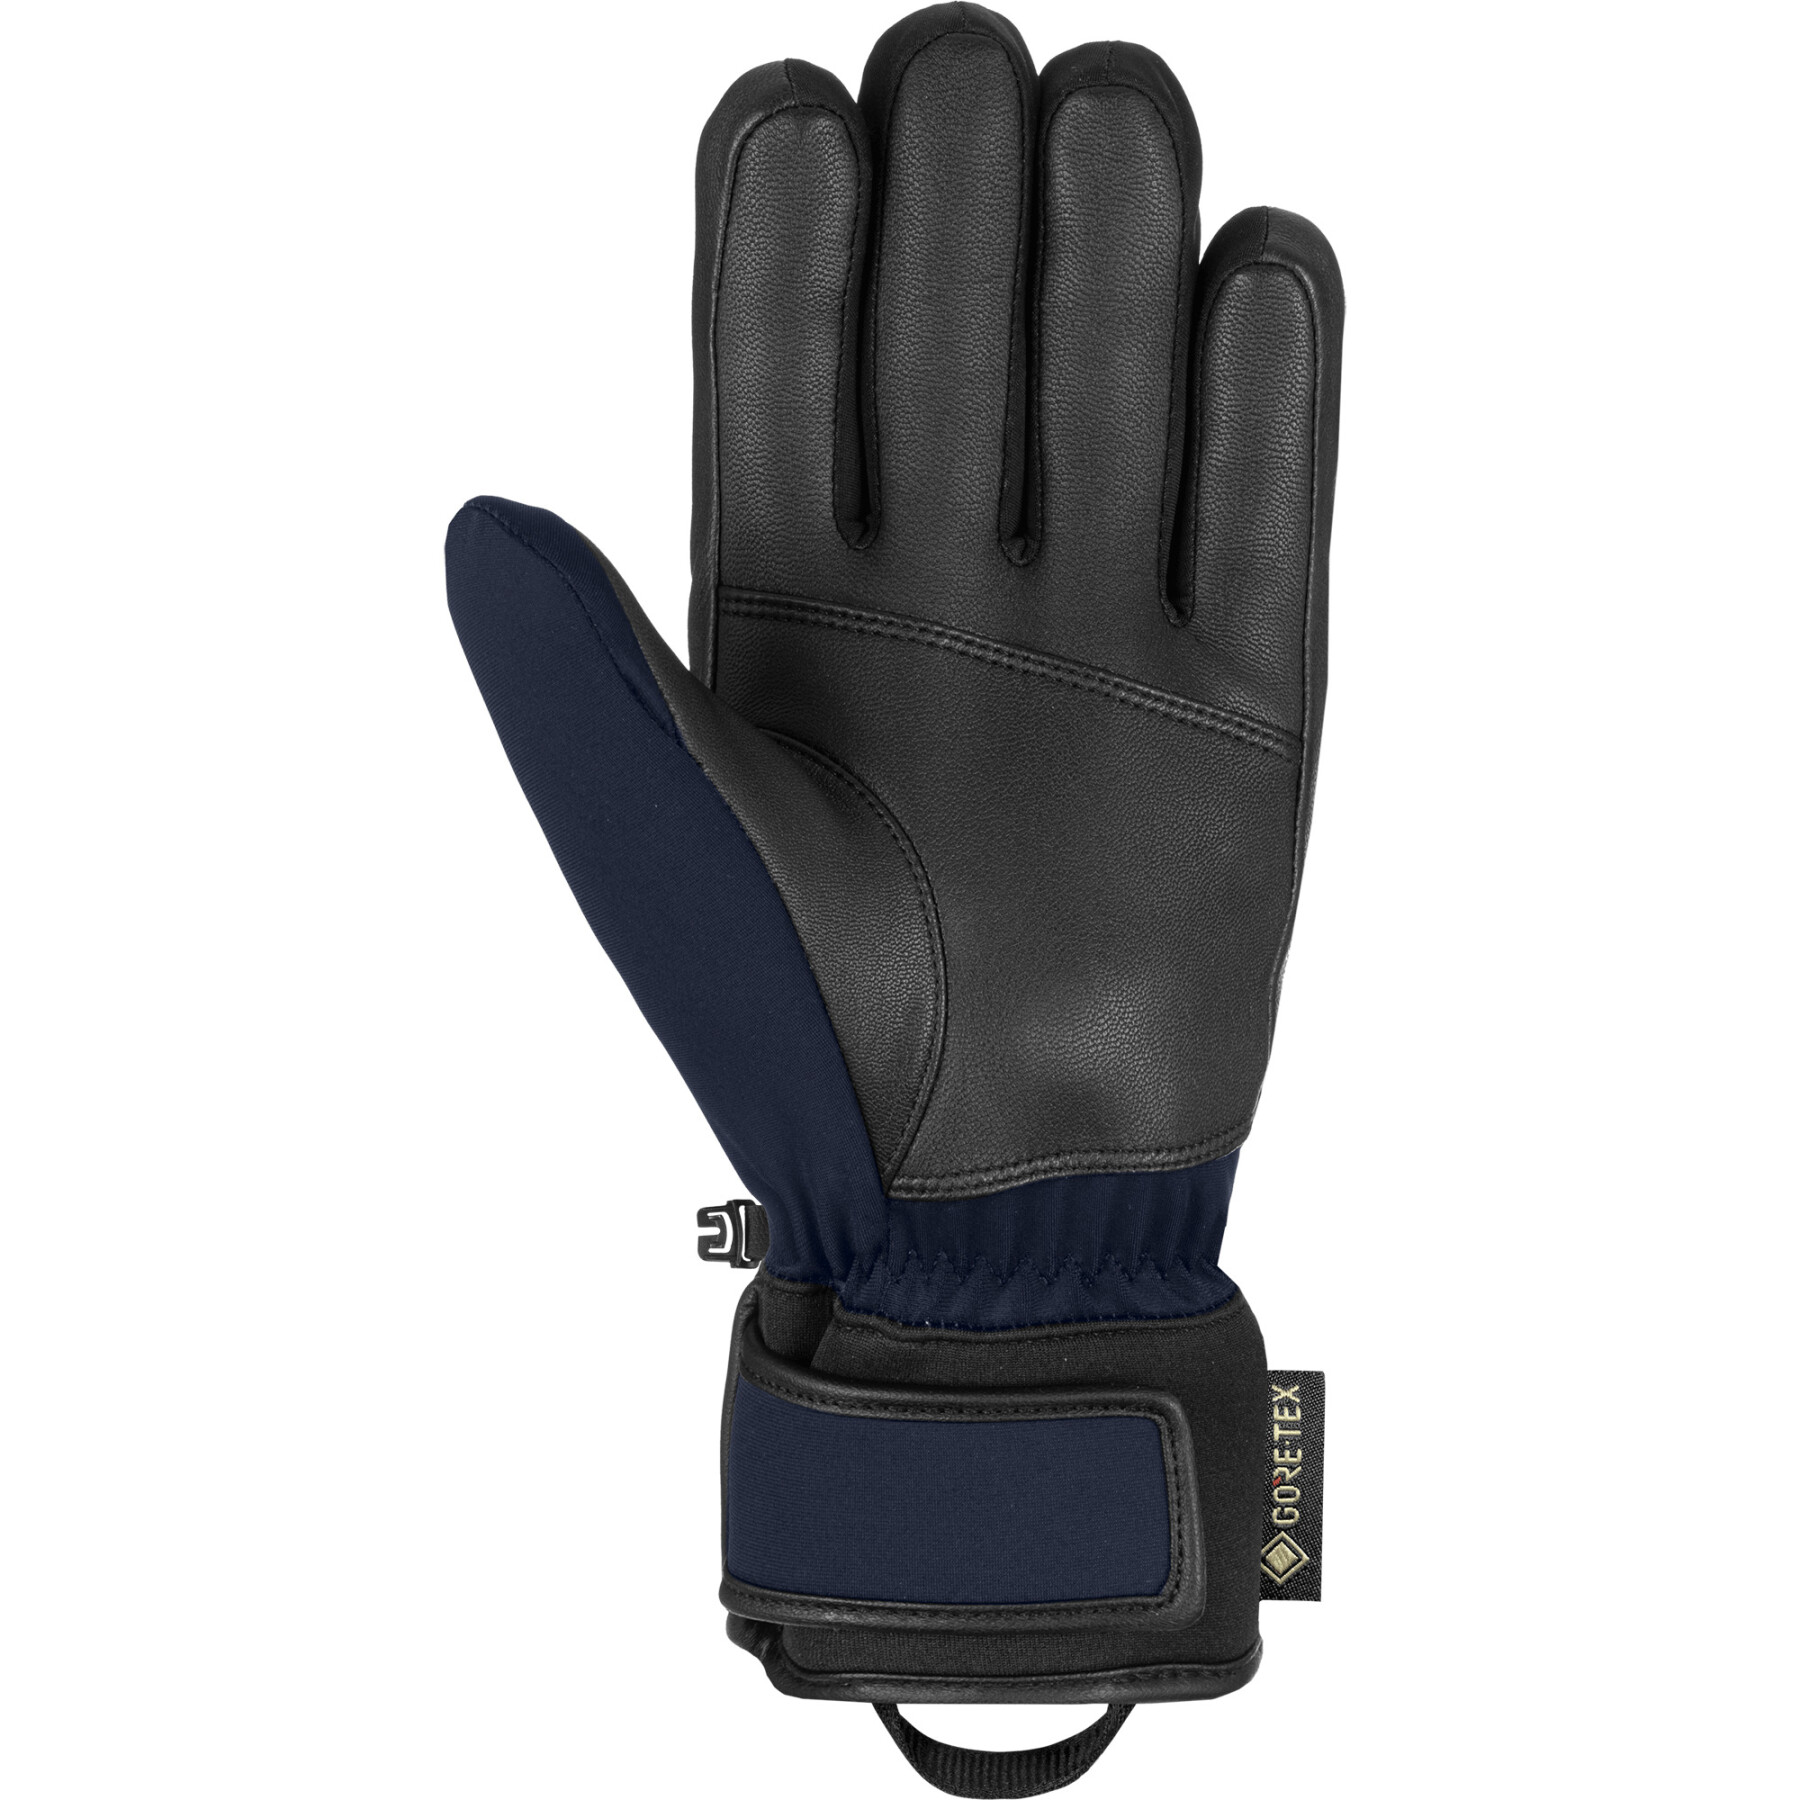 Ski gloves Reusch Jupiter Gore-Tex